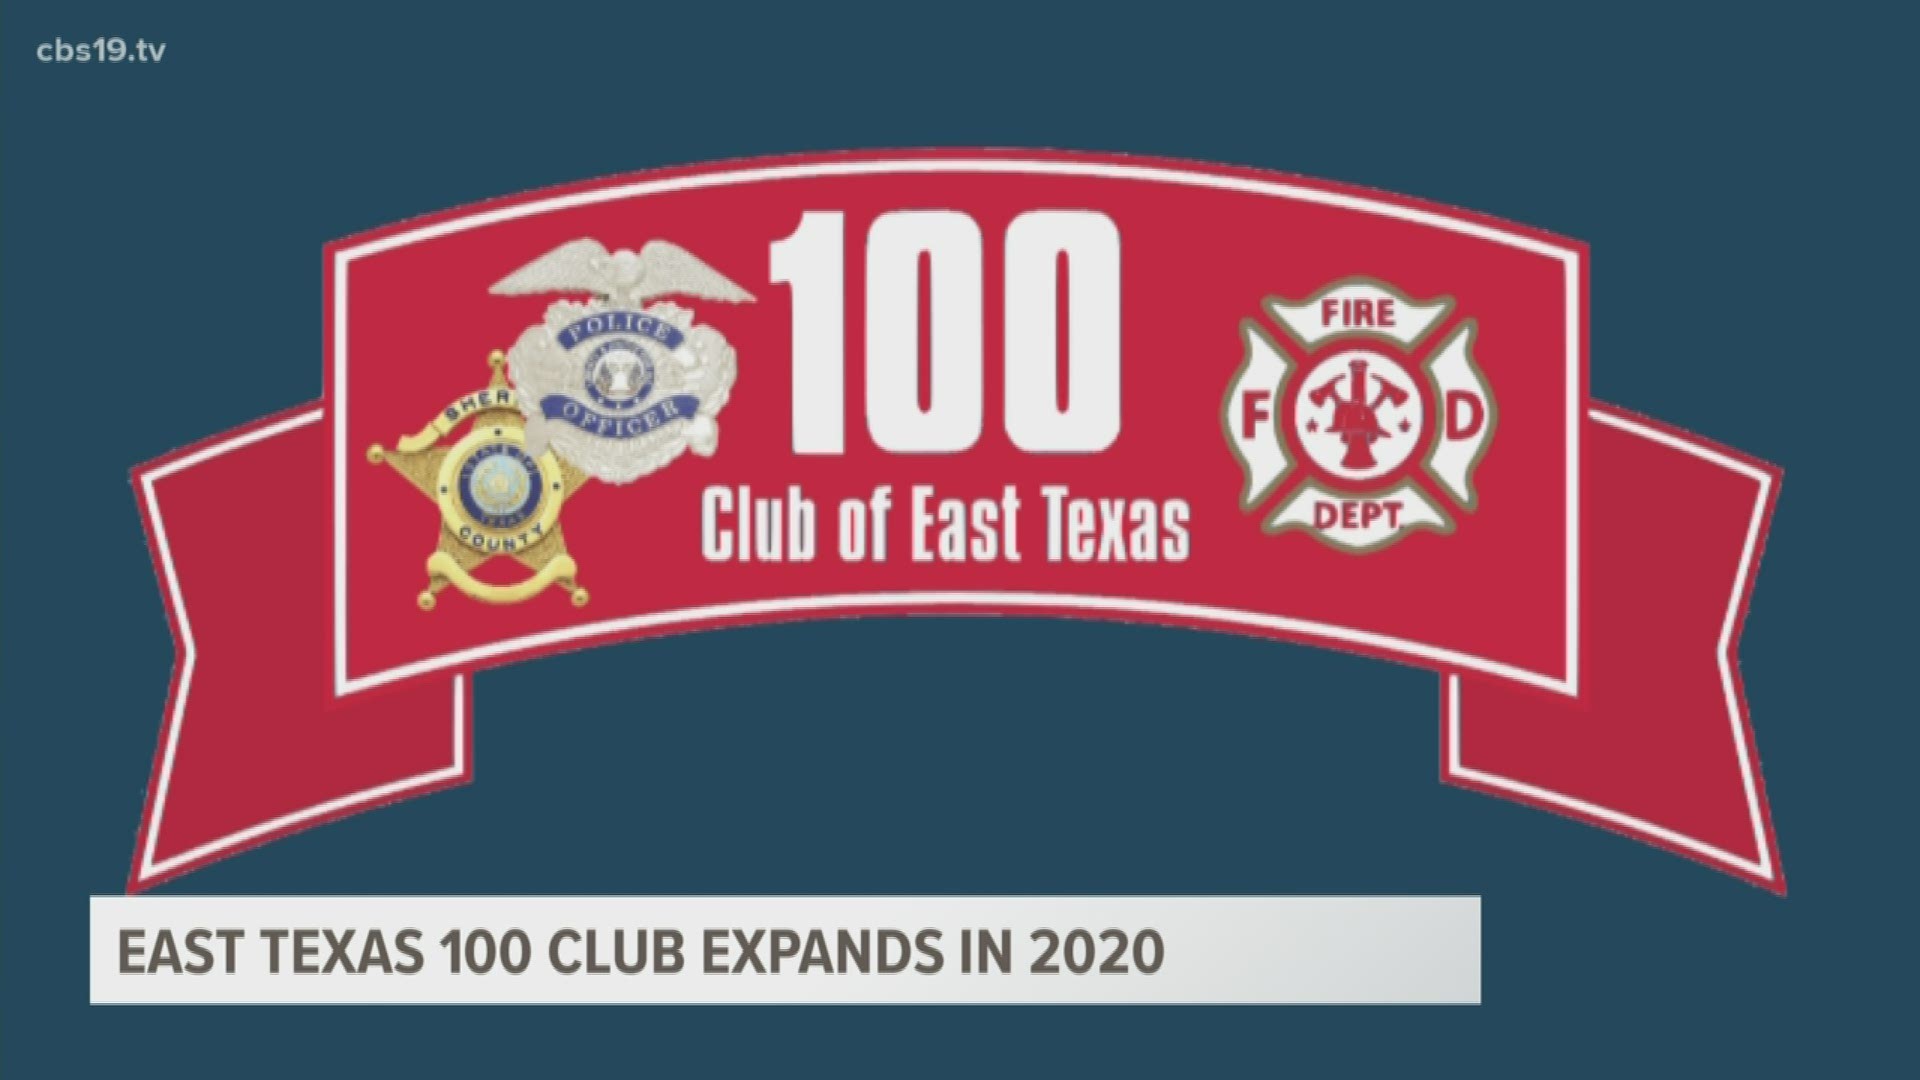 100 club of East Texas